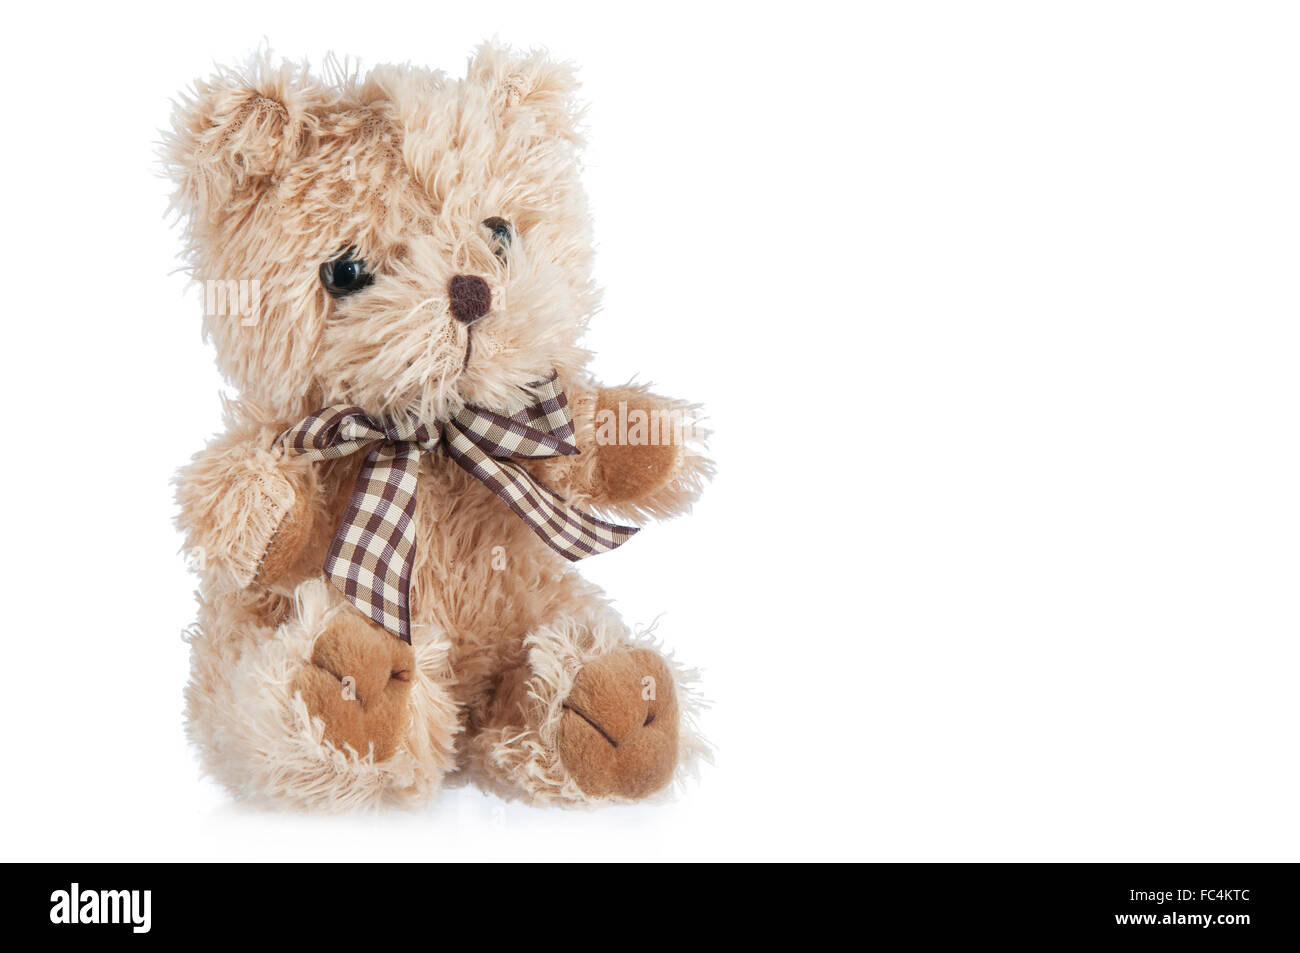 Teddy-bear toy isolato su uno sfondo bianco. Foto Stock